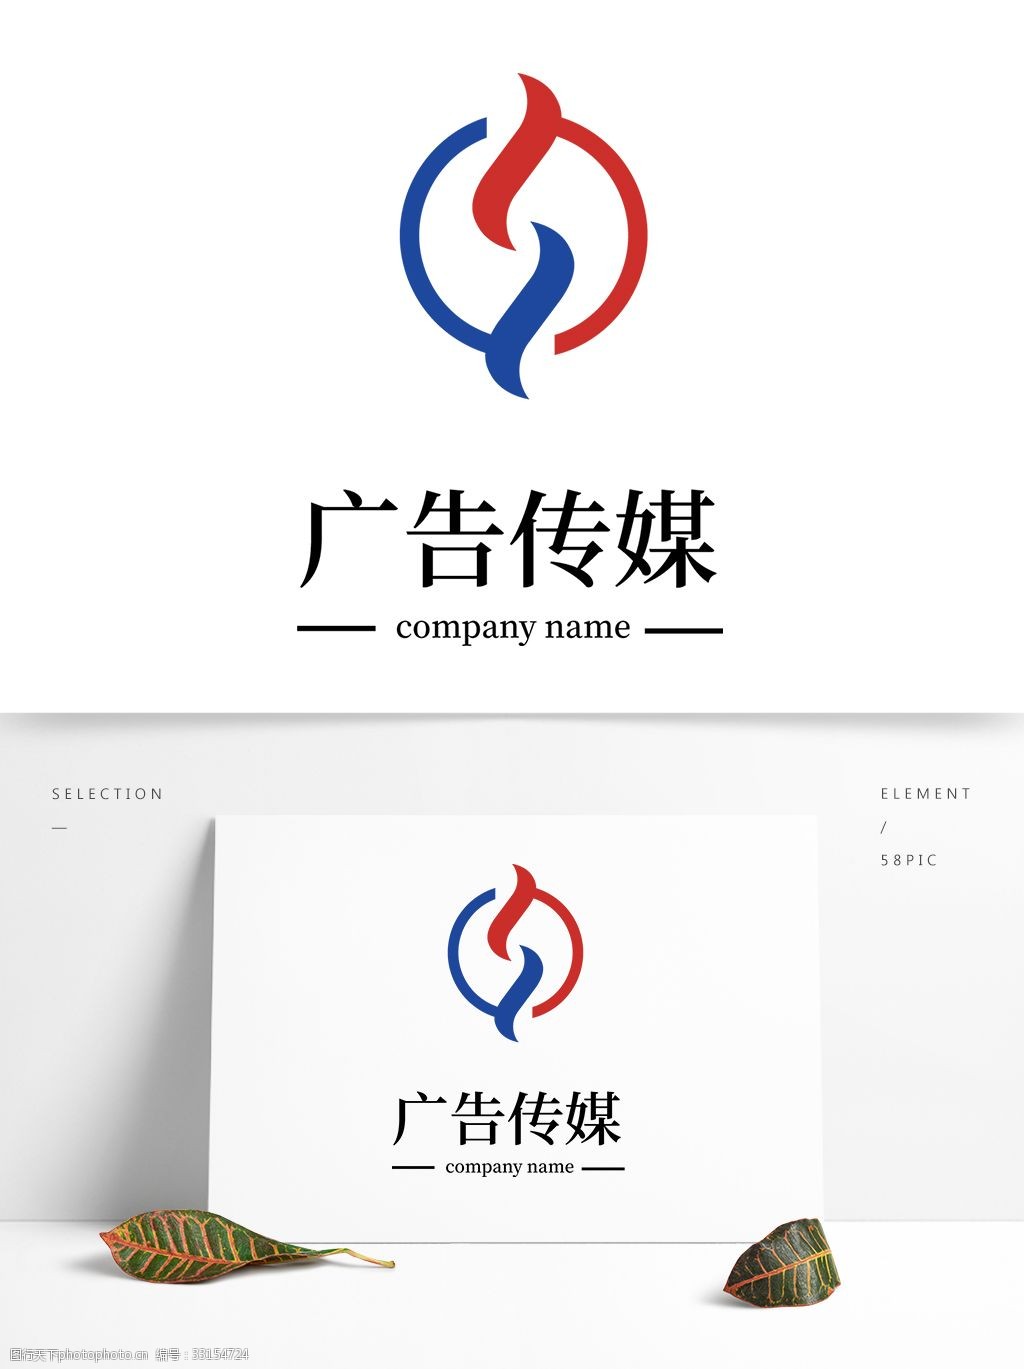 广告传媒创意图形logo设计